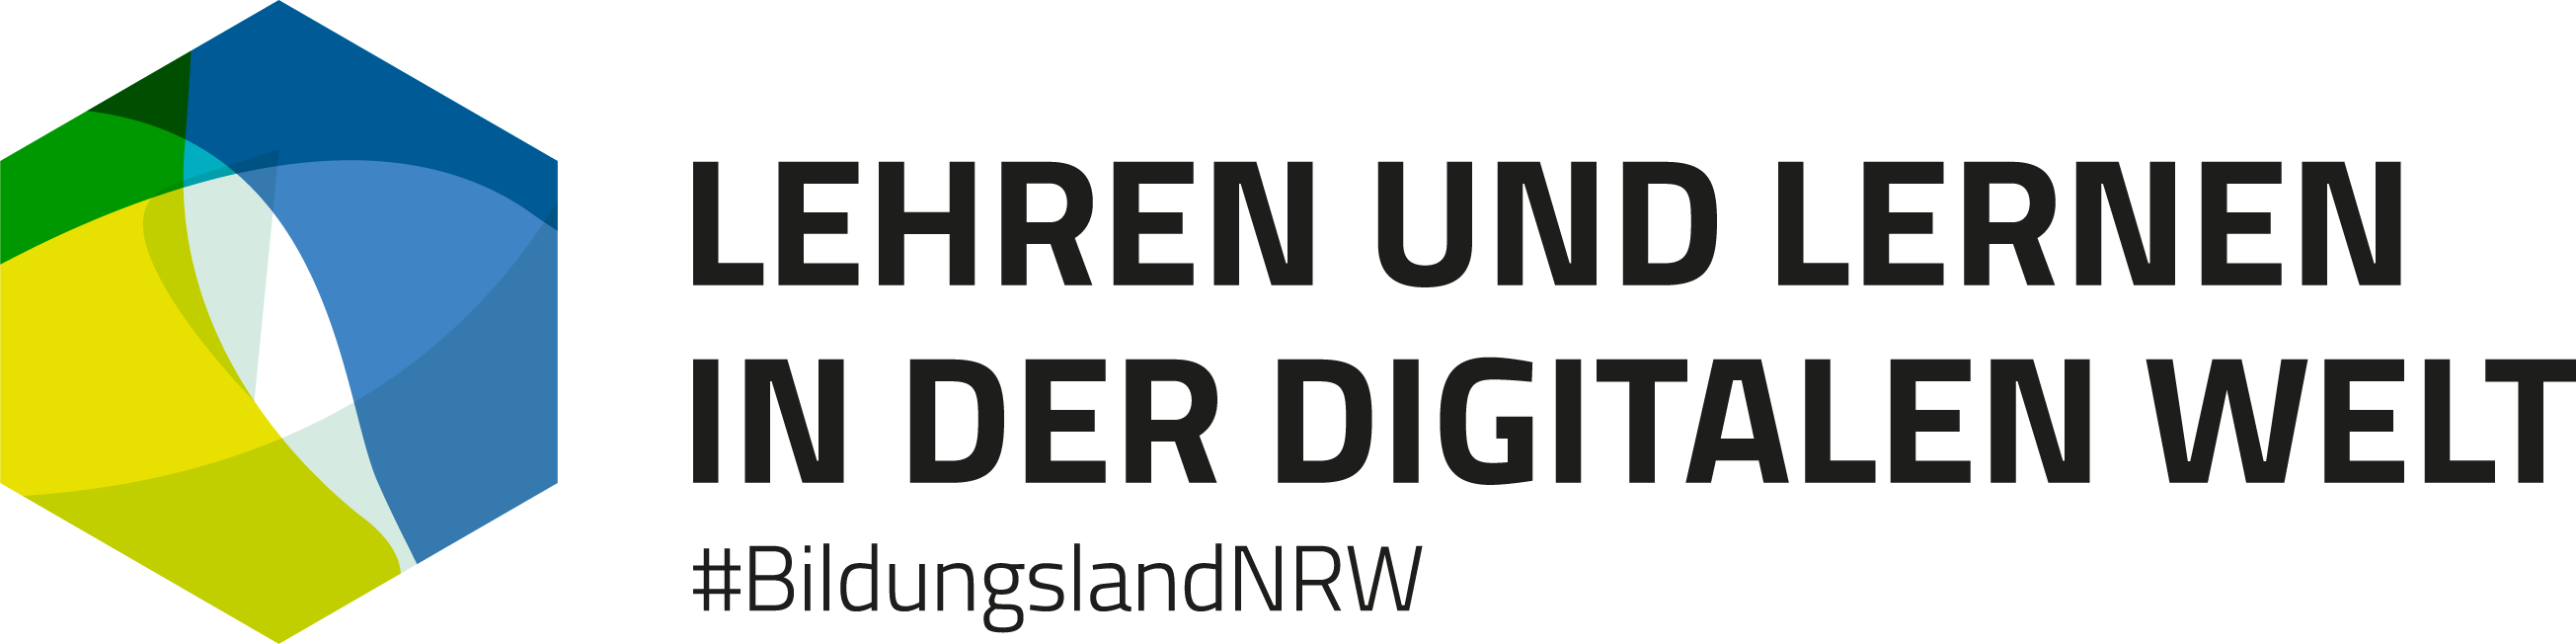 Lehren und Lernen in der digitalen Welt, #BildungslandNRW